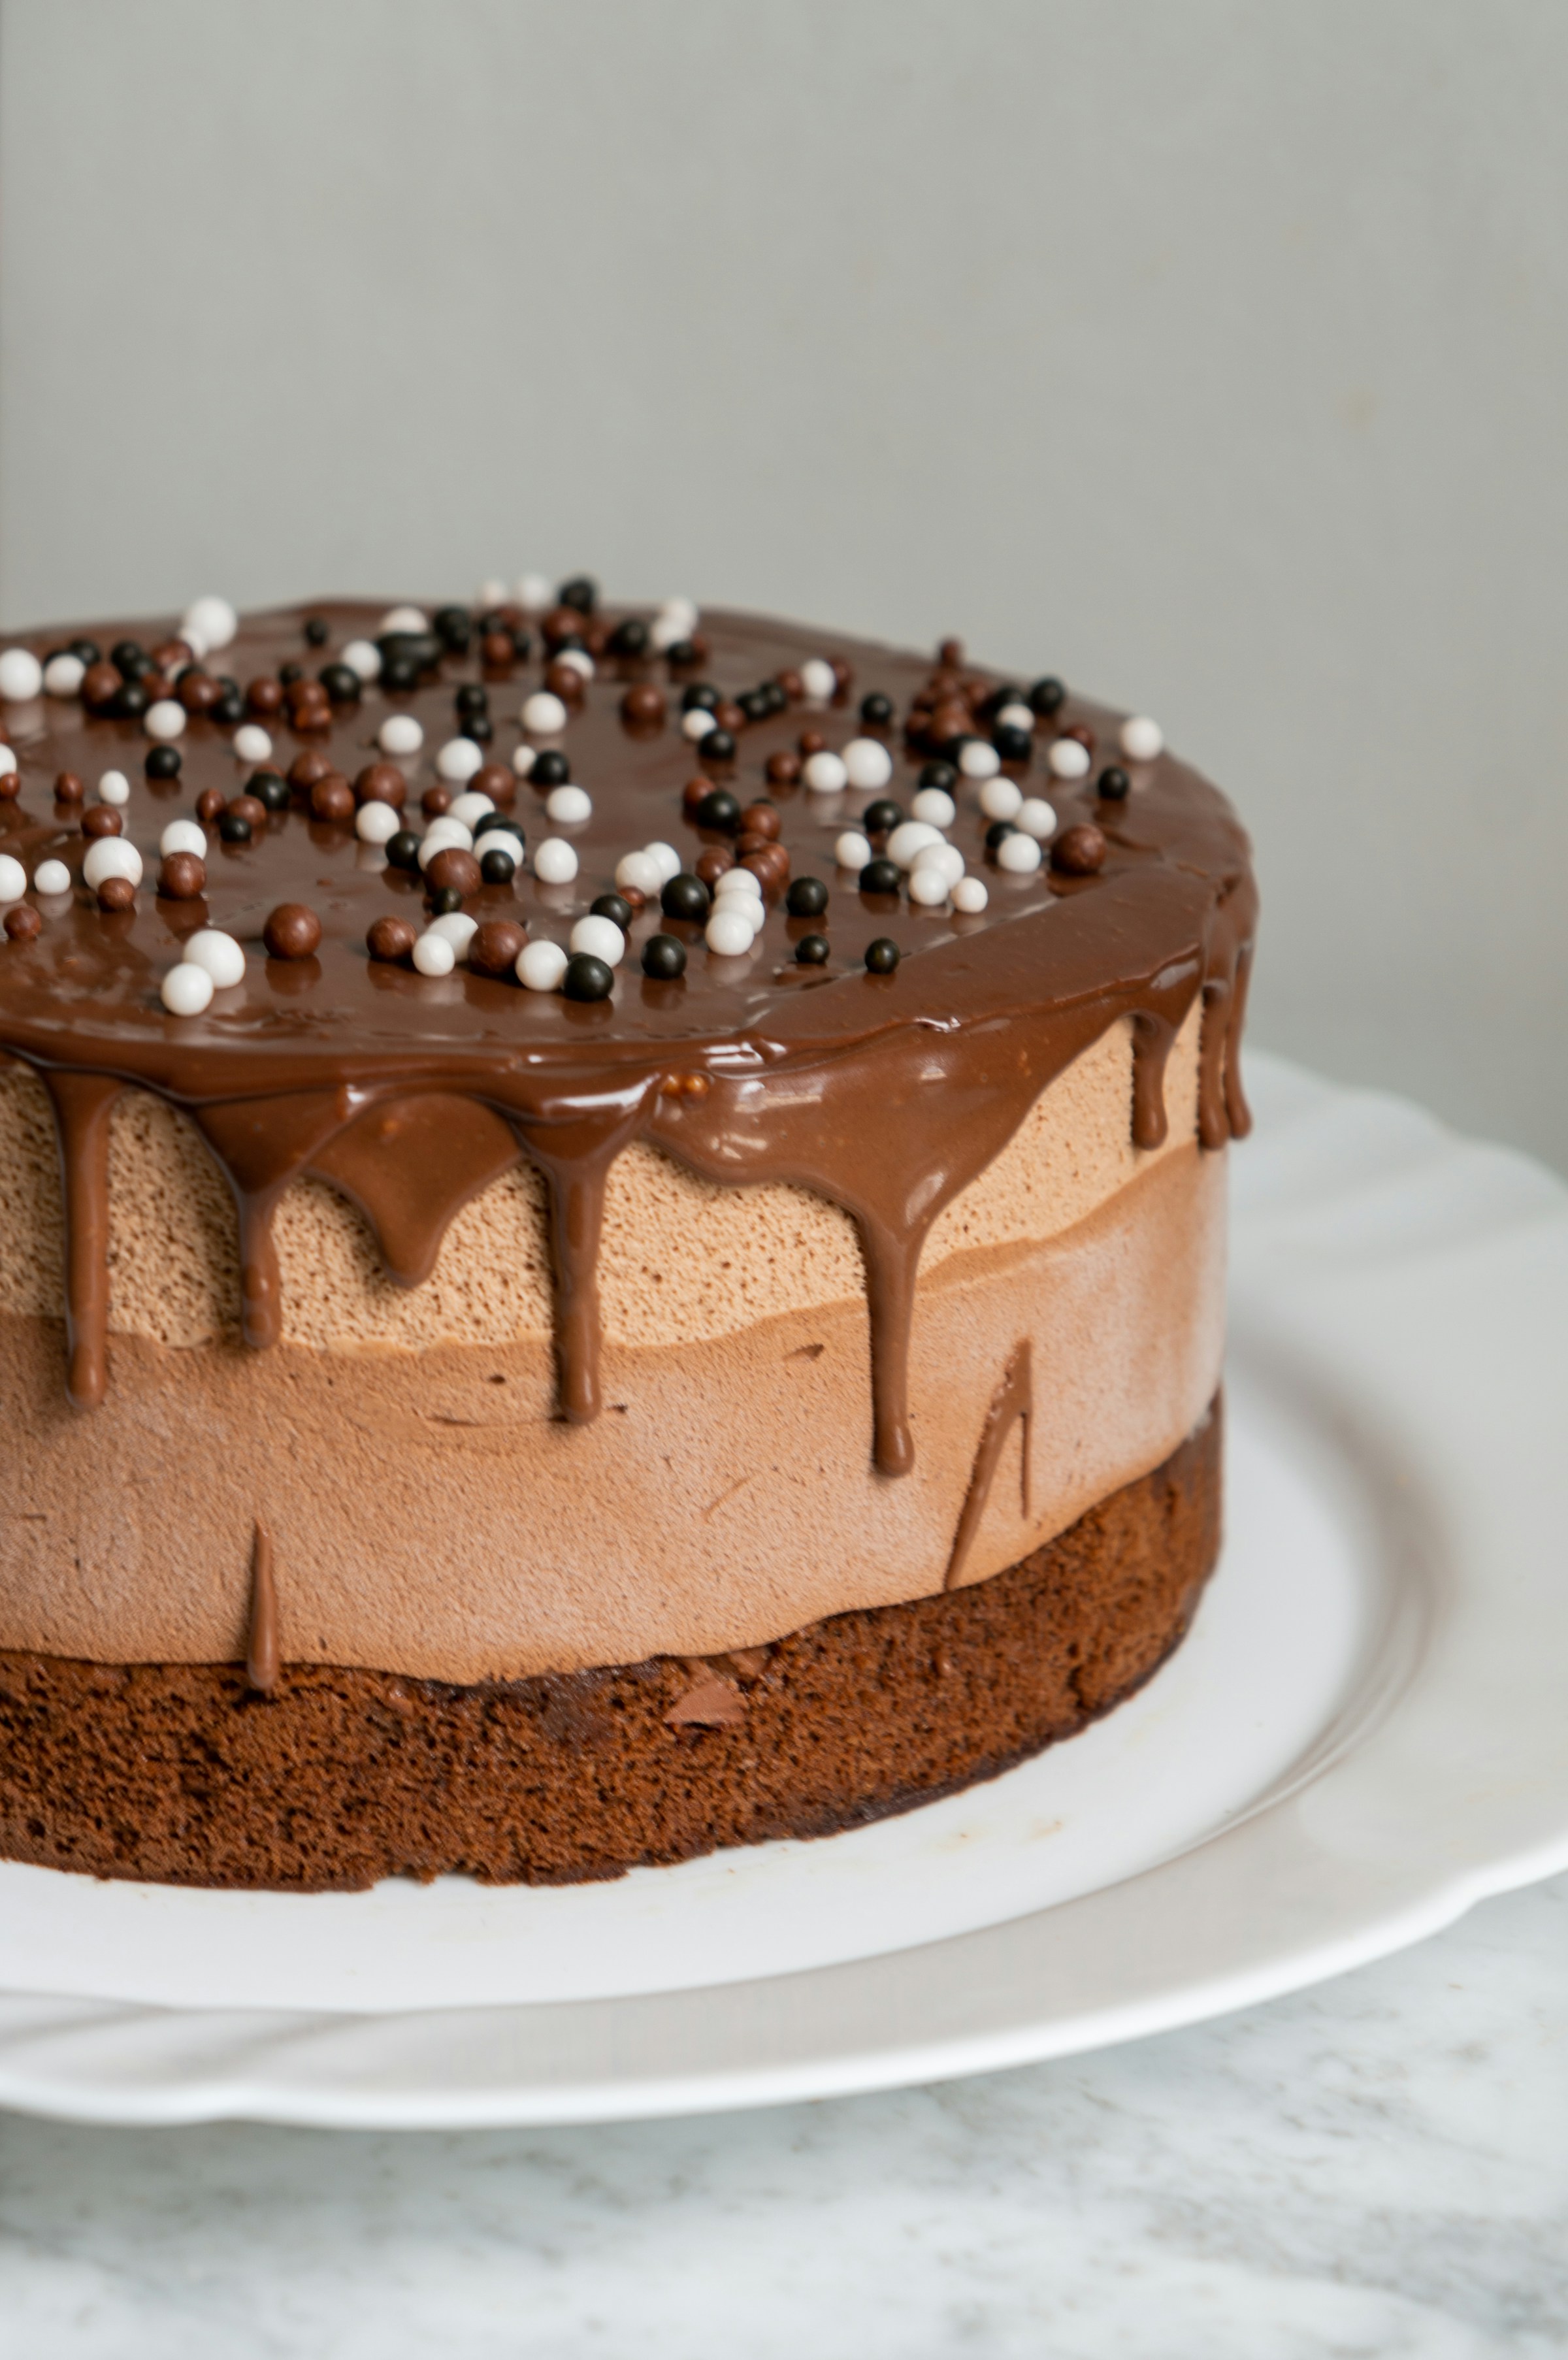 Un gâteau au chocolat | Source : Unsplash